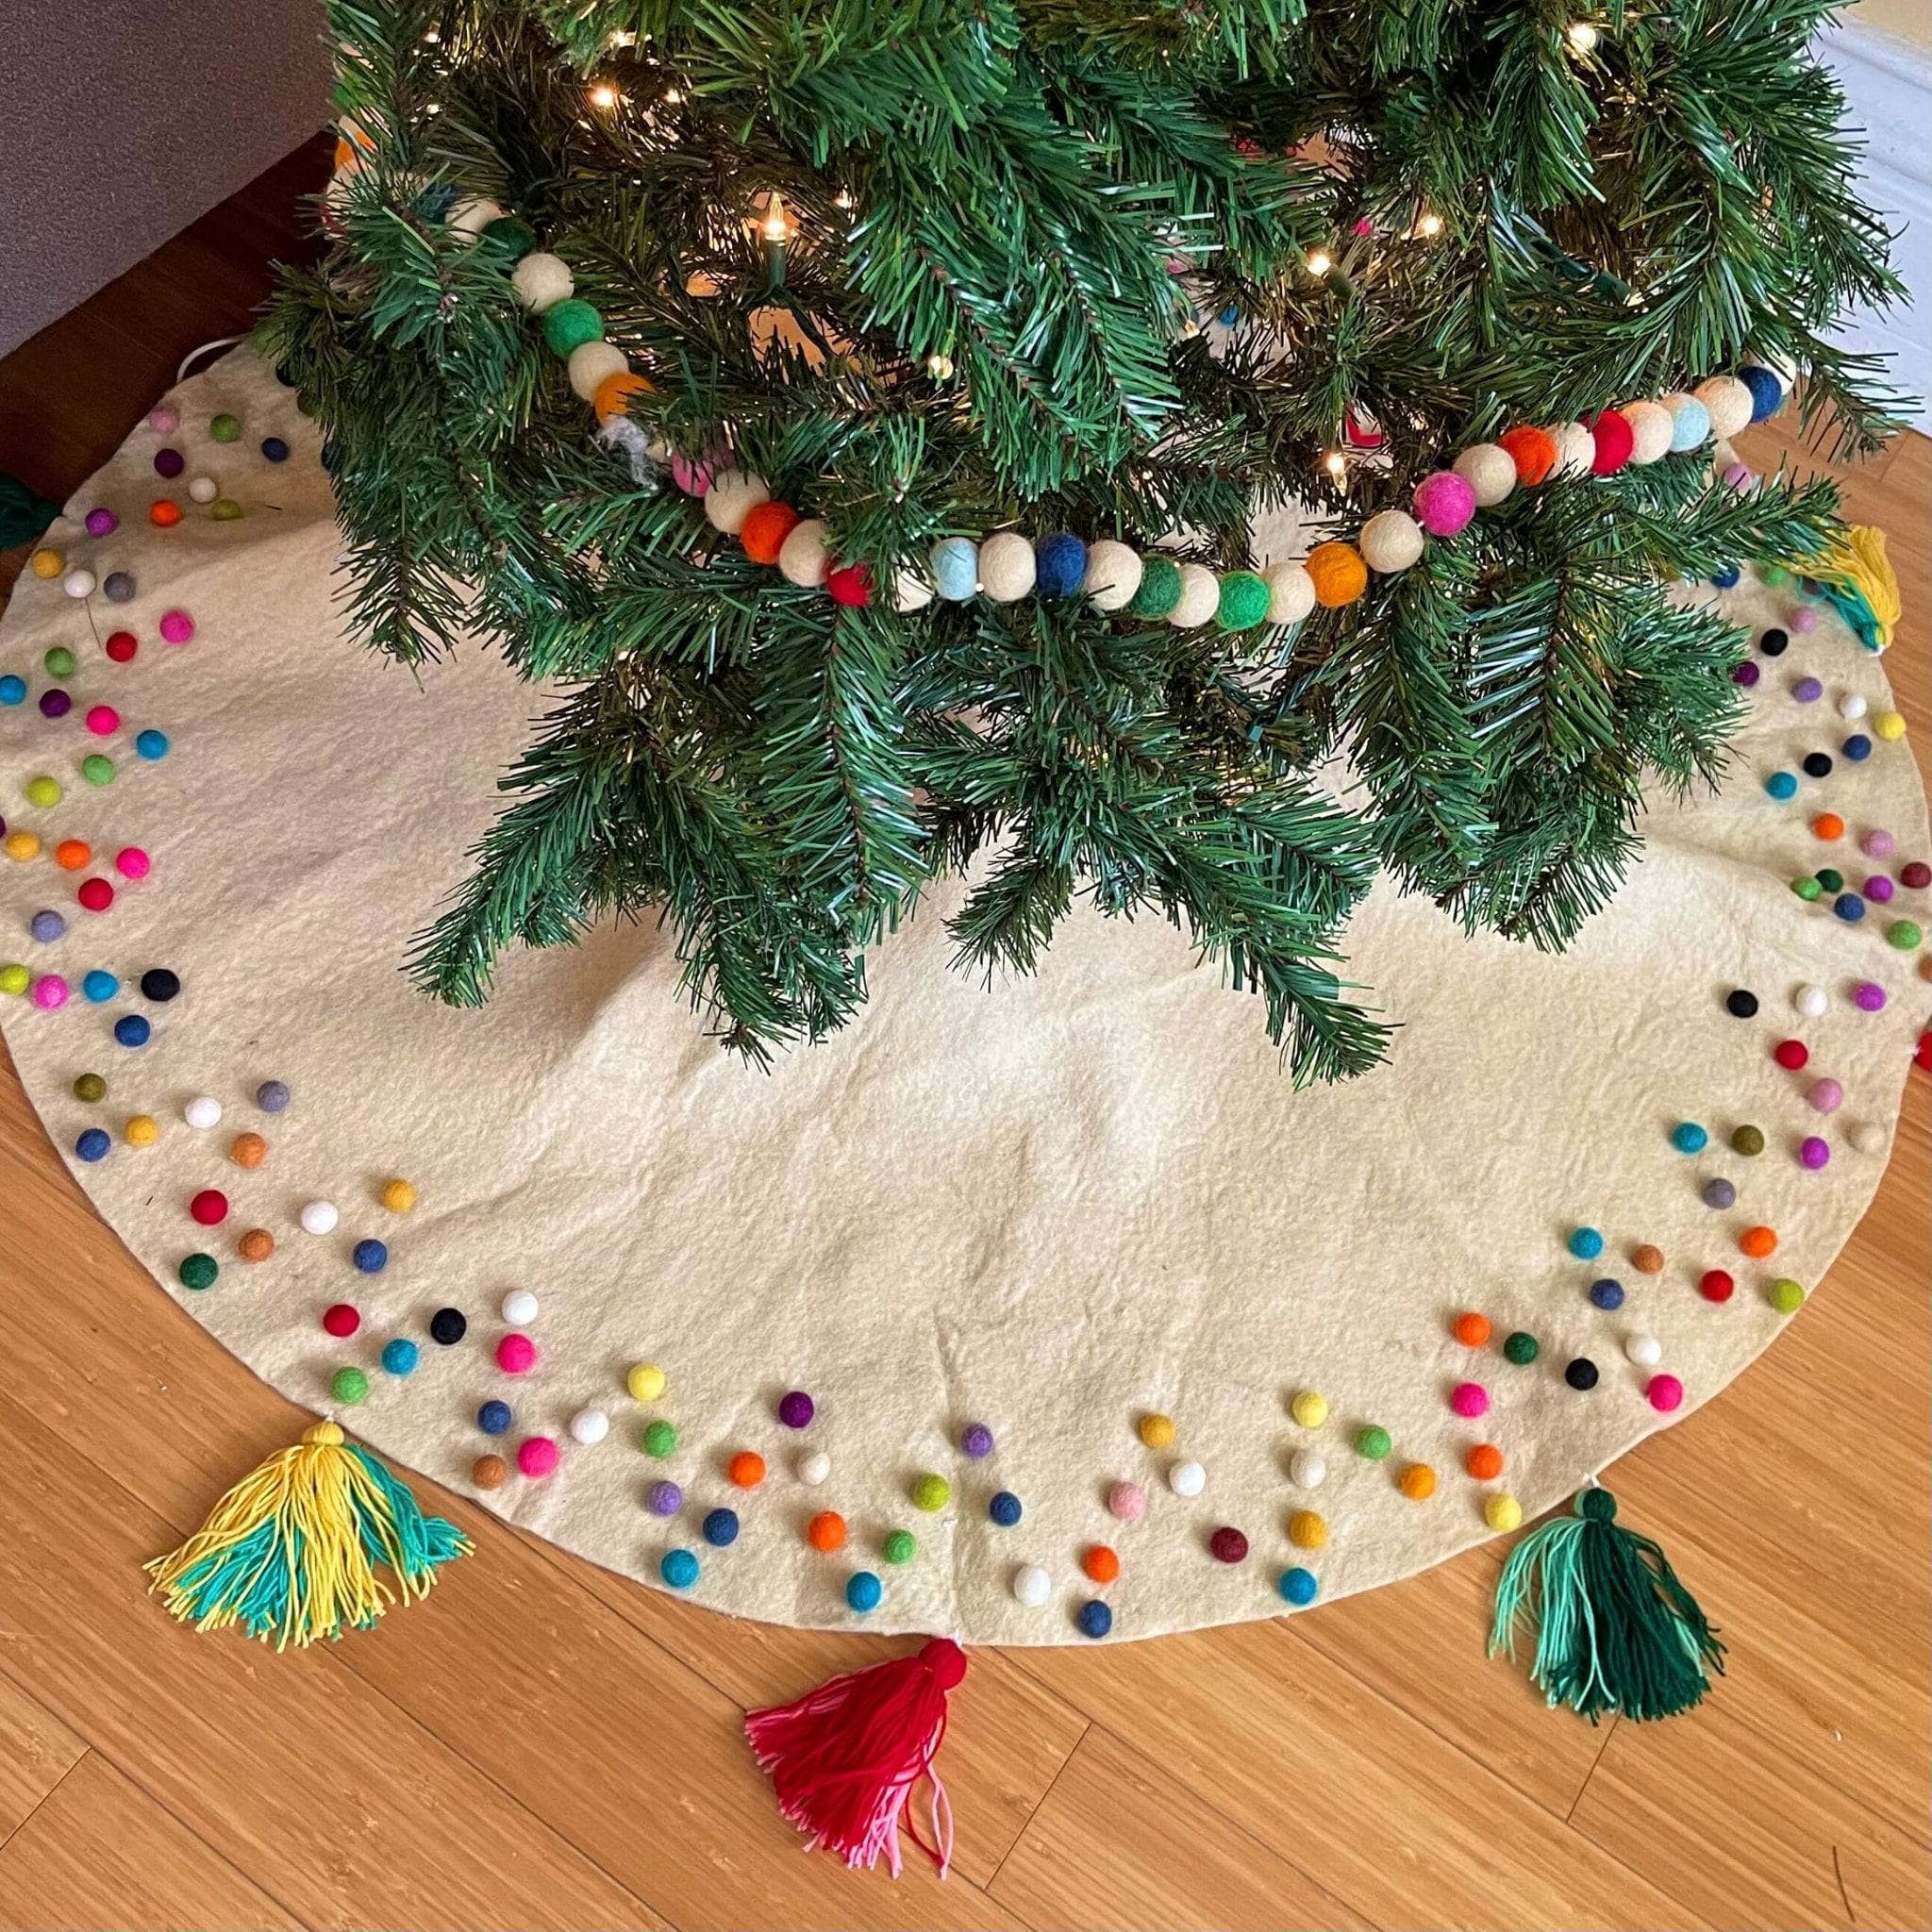 Christmas Tree Crochet Kit Christmas House Diy Knitting Set